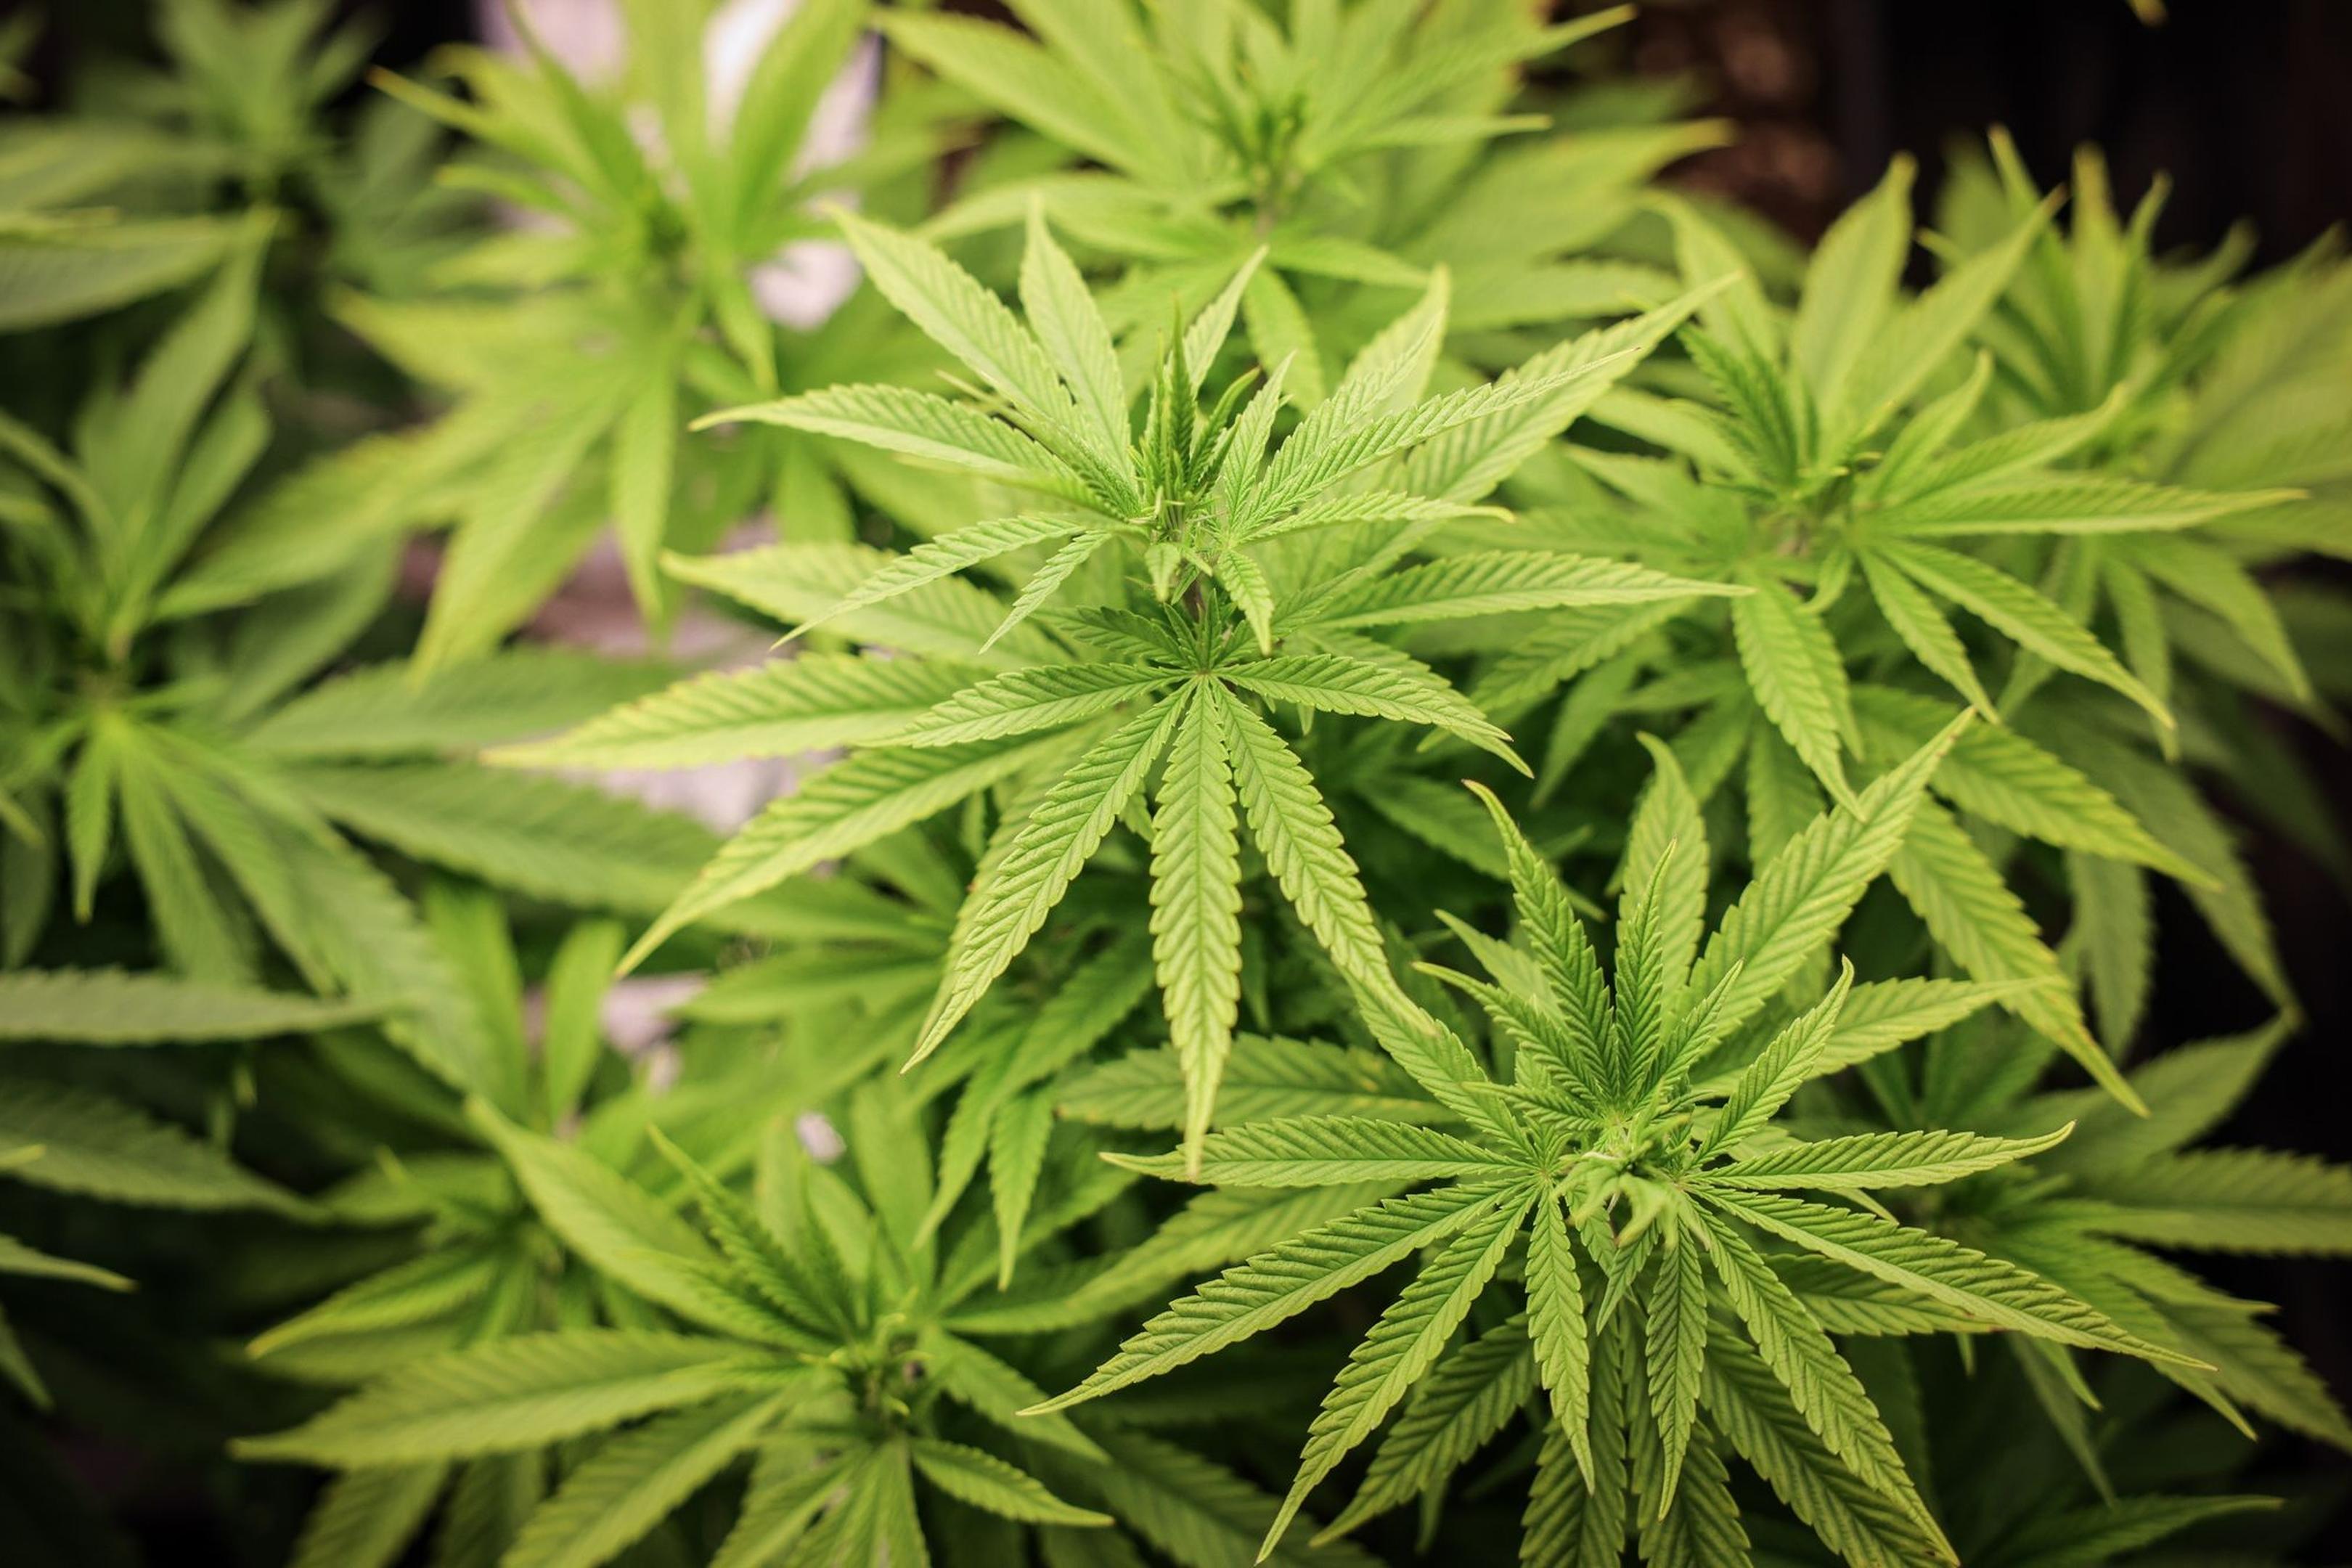 Der Branchenverband Cannabiswirtschaft warnt, mit den geplanten strengeren Regeln für den legalen Anbau von Cannabis in Vereinen wäre es schwerer, eine Produktion aufzubauen.